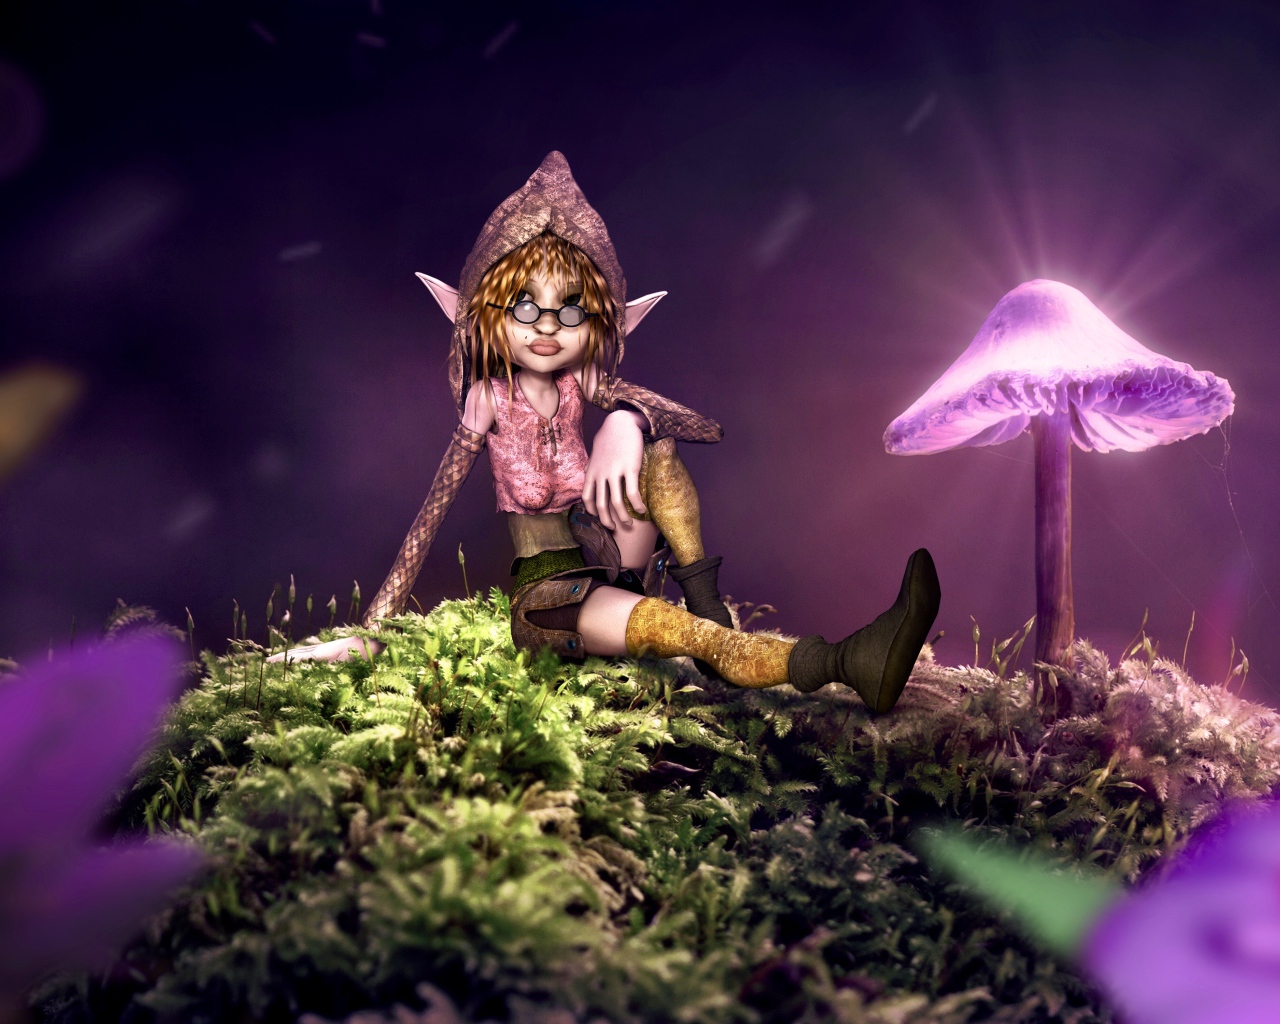 Фантастический эльф сидит на покрытой мхом земле с неоновыми грибами